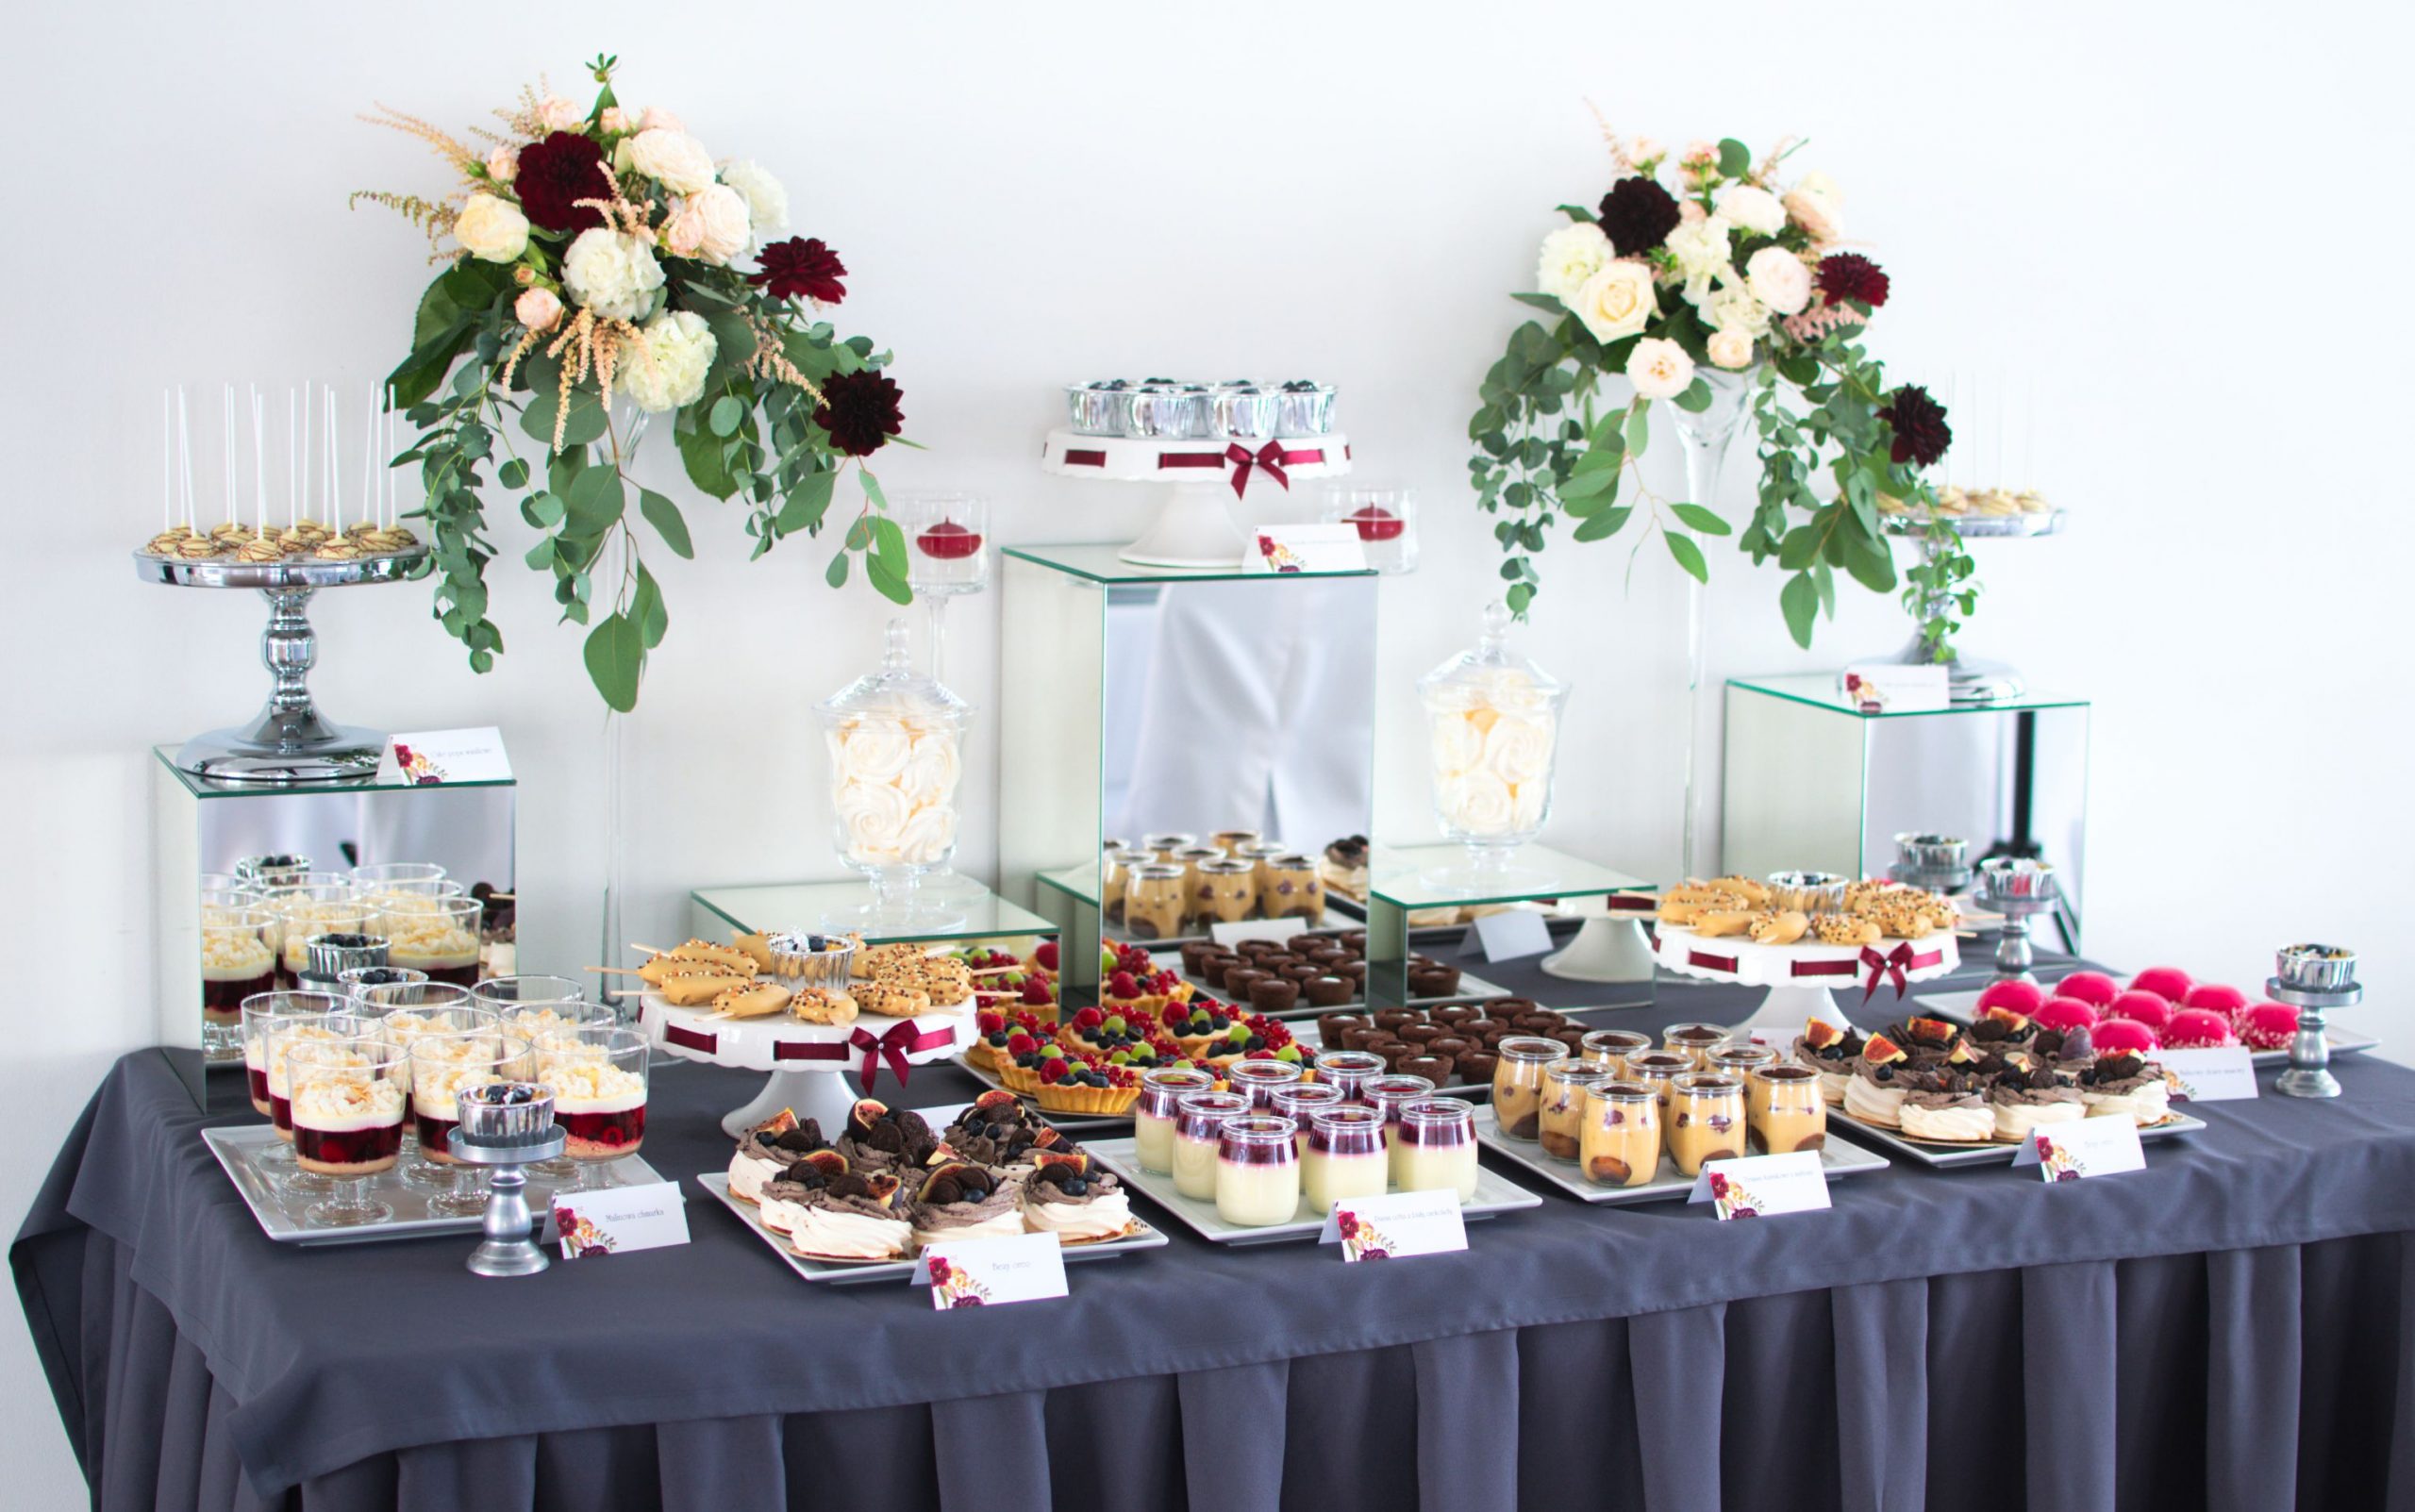 Słodki stół przygotowany na wesele Angeli i Przemka